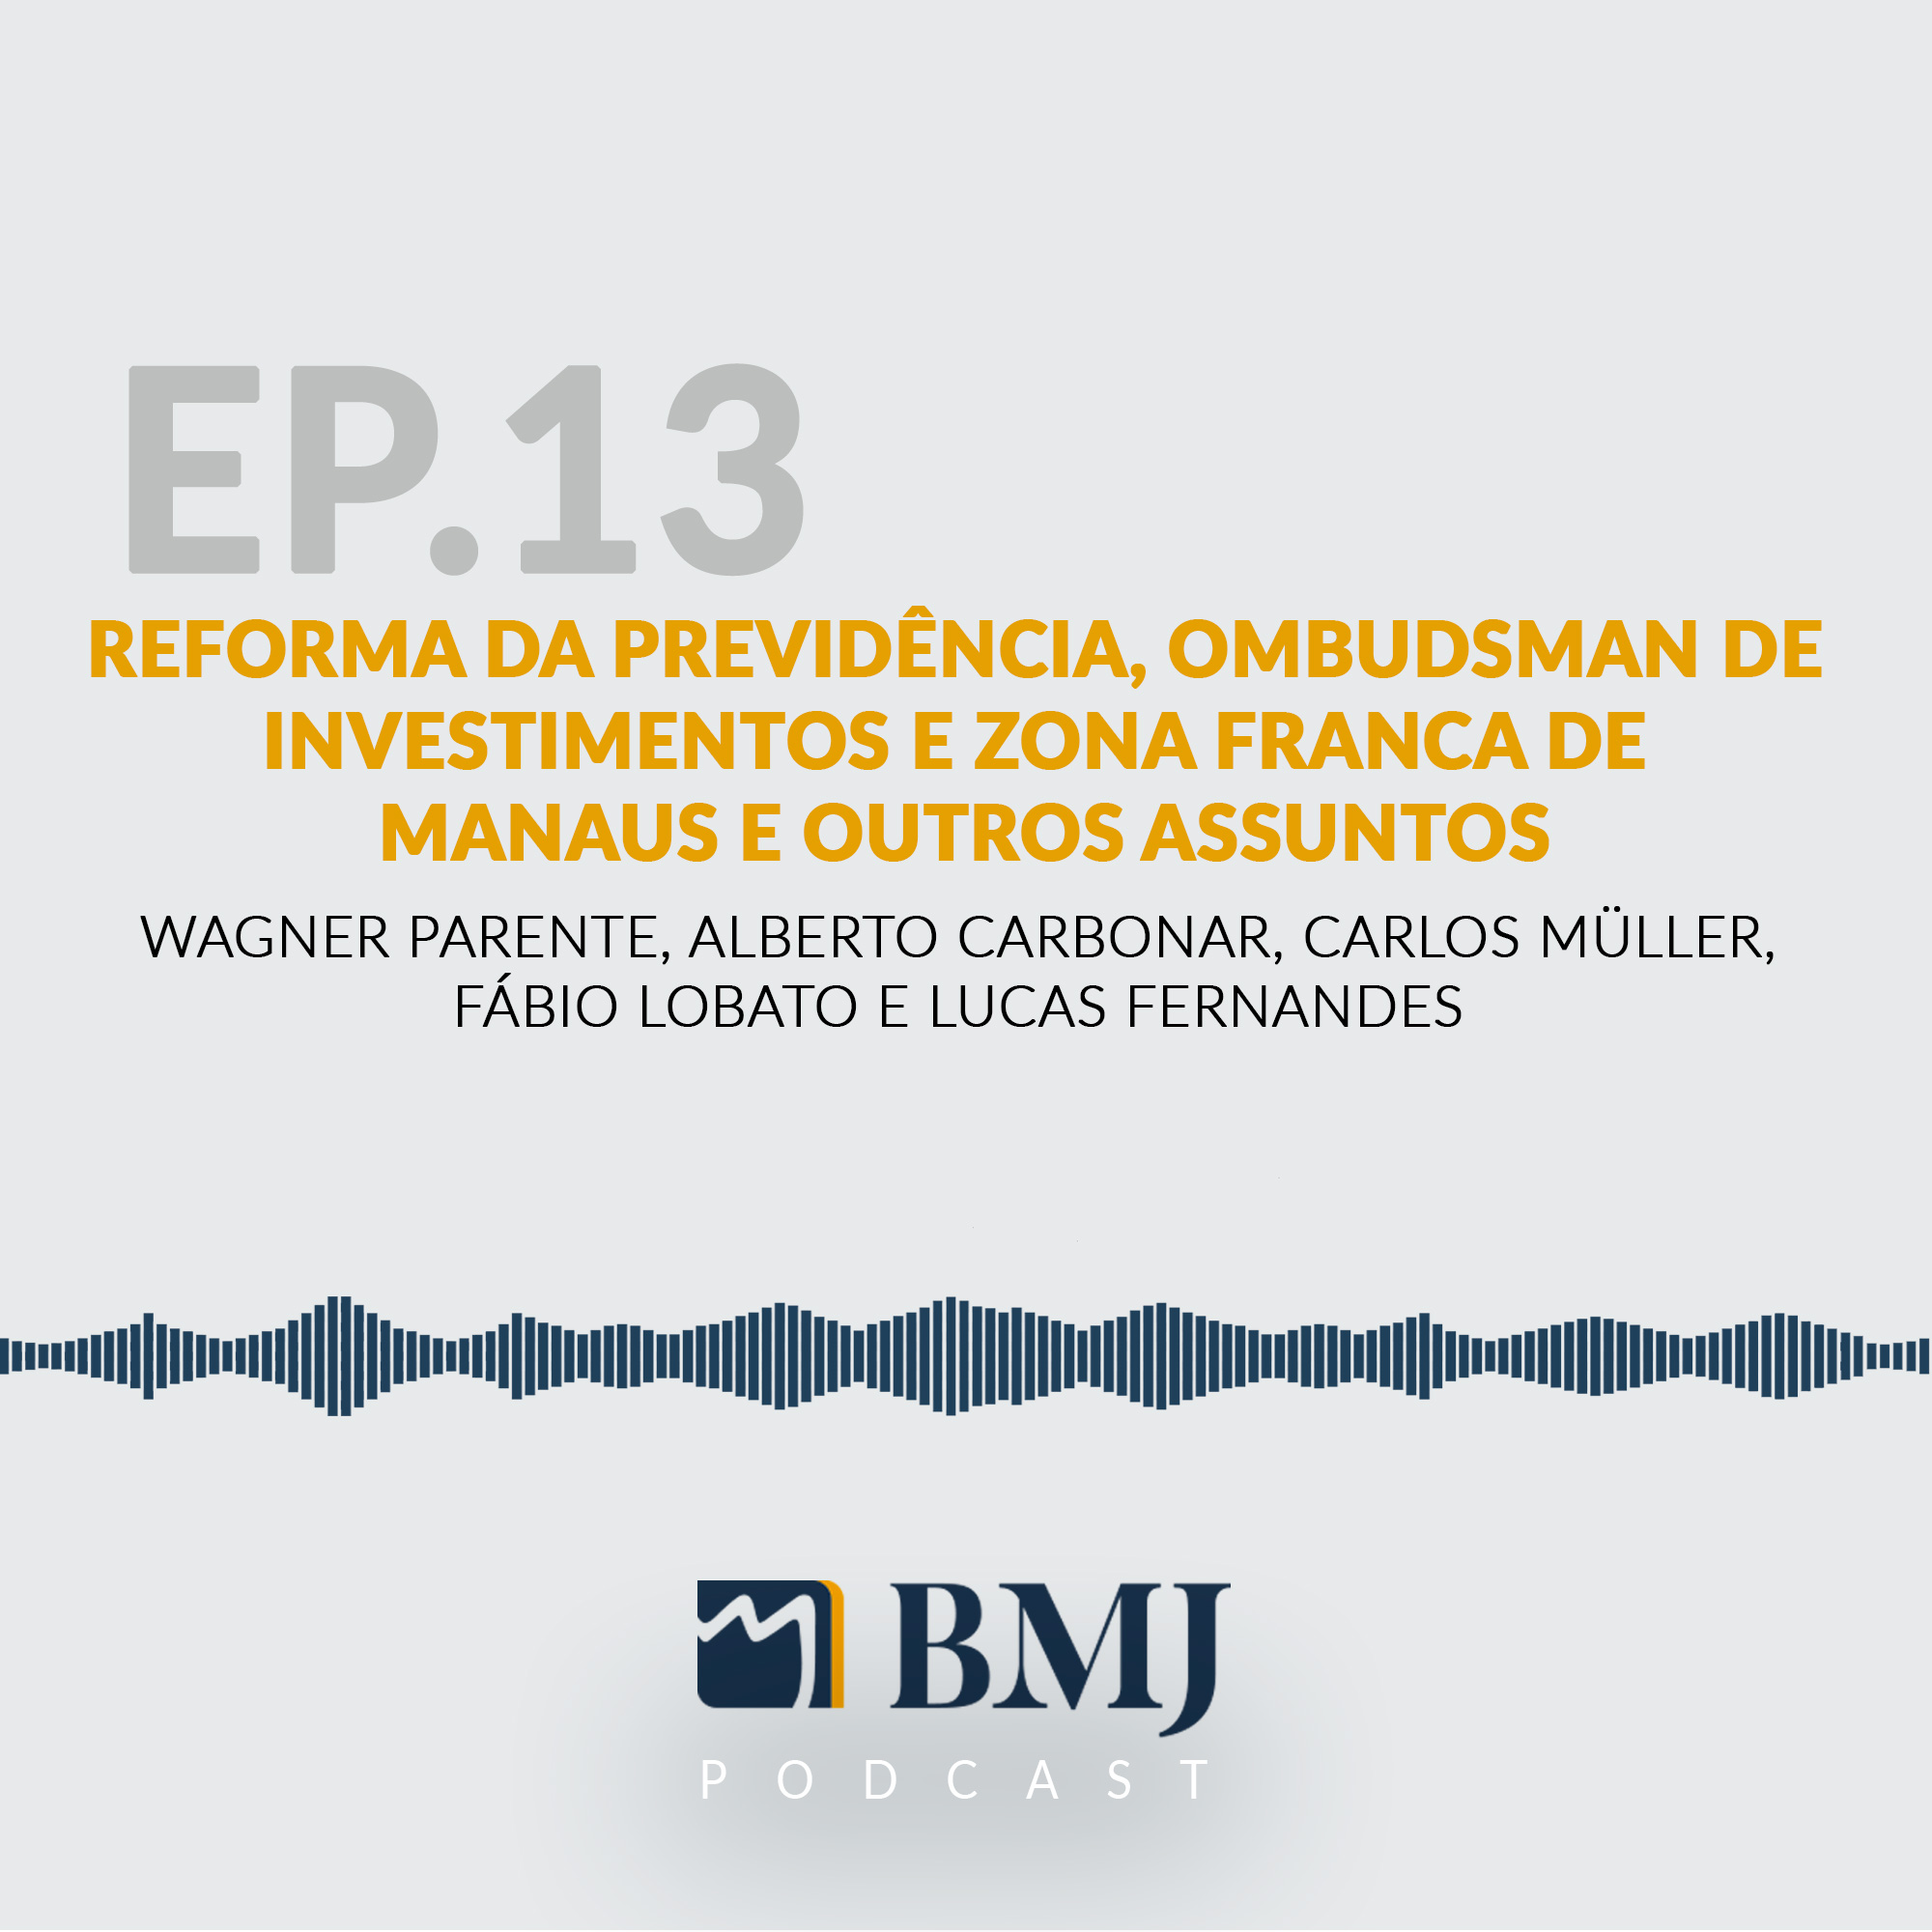 Reforma da Previdência, Ombudsman de investimentos, Zona Franca de Manaus e outros assuntos